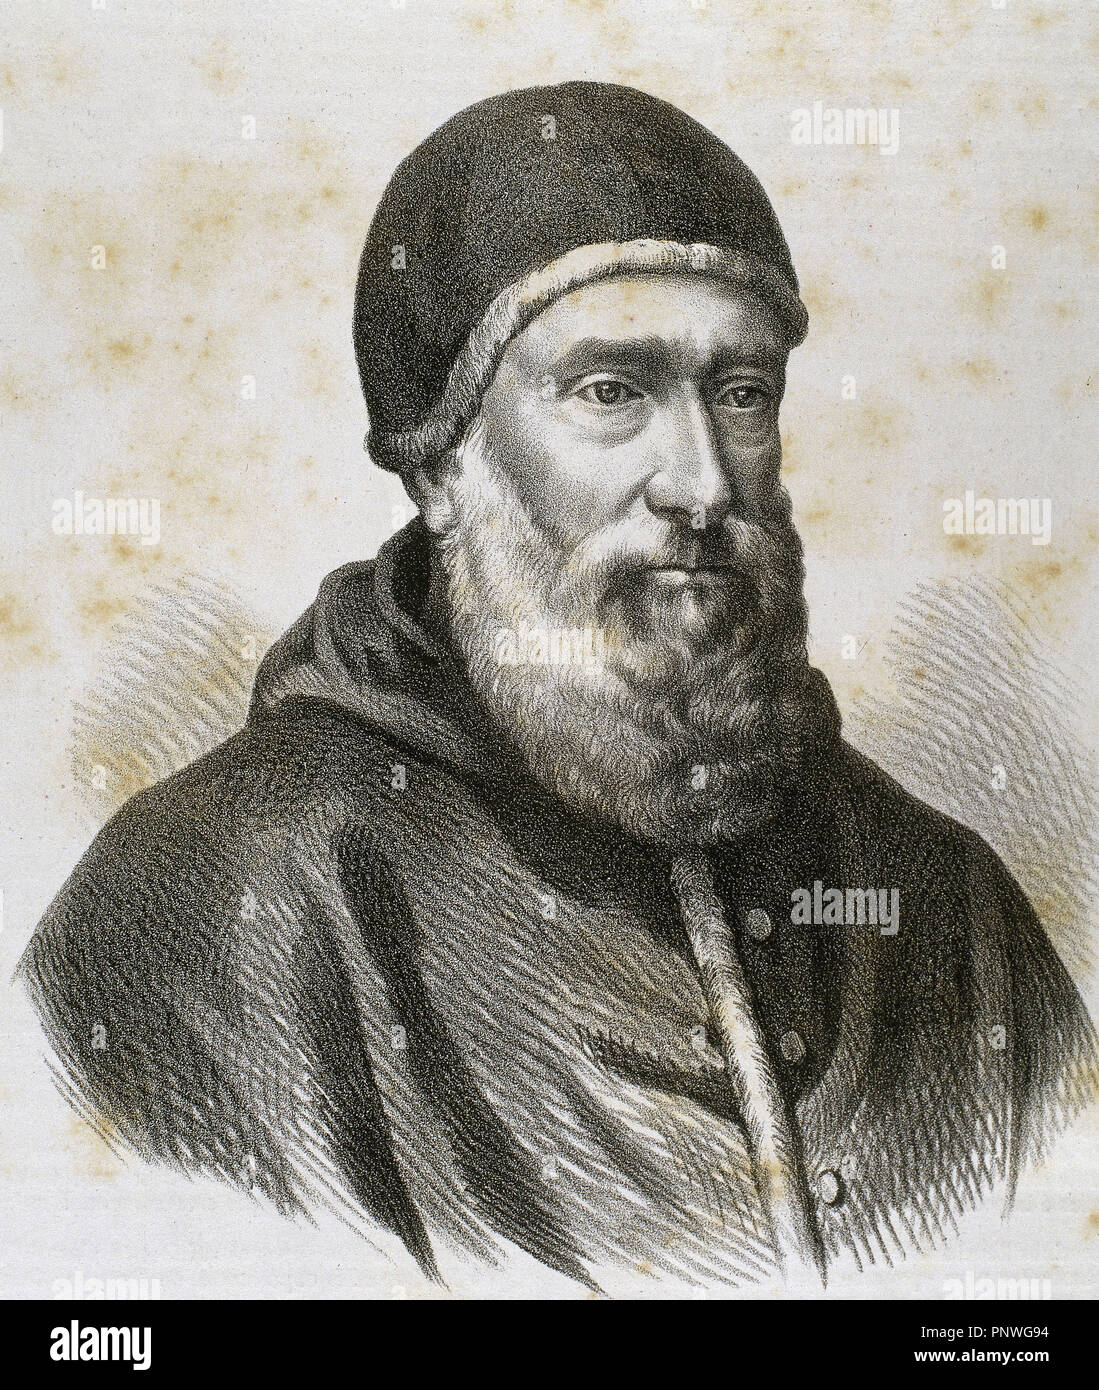 CLEMENTE VII (1478-1534). Papa italiano, de nombre Giulio de Médici (1523-1534). Gracias a su mecenazgo, Miguel Angel realizó las pinturas del Juicio Final de La Capilla Sixtina. S. XVI. Grabado S. XIX. Stockfoto